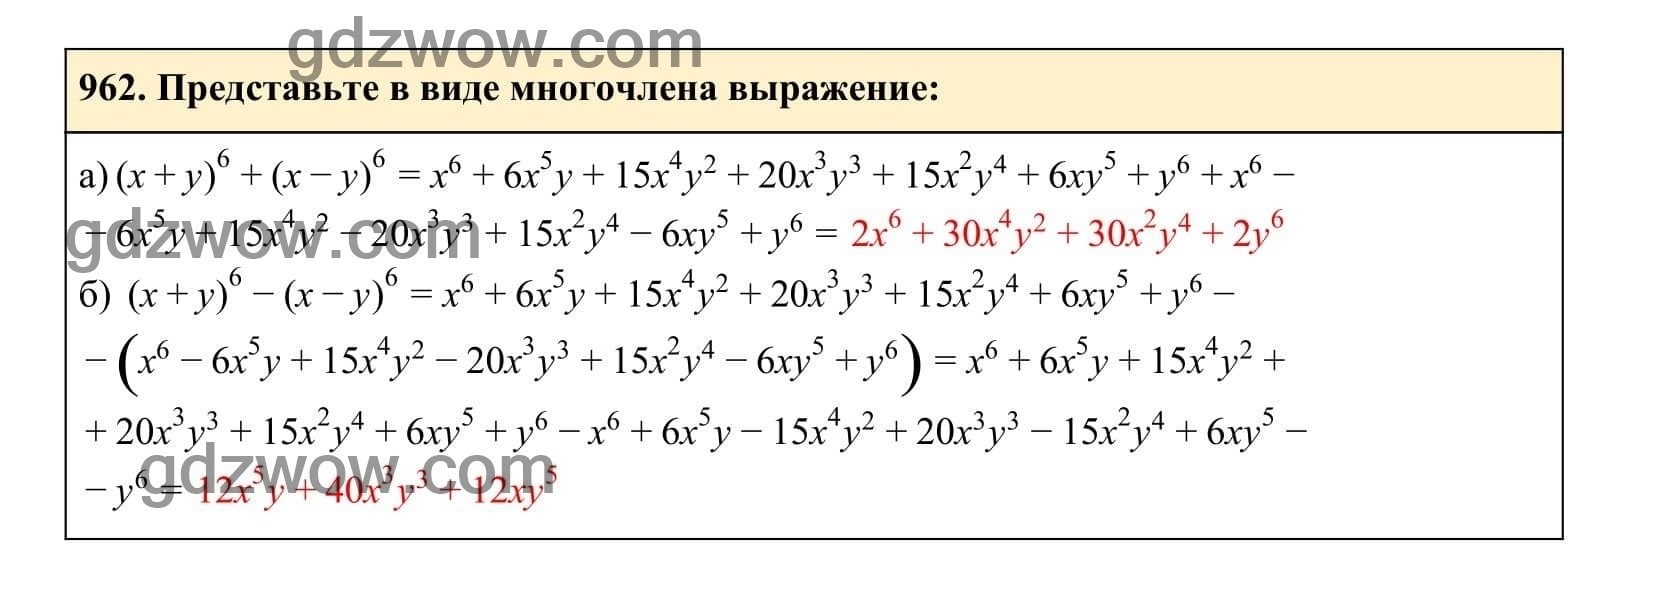 Упражнение 962 - ГДЗ по Алгебре 7 класс Учебник Макарычев (решебник) - GDZwow